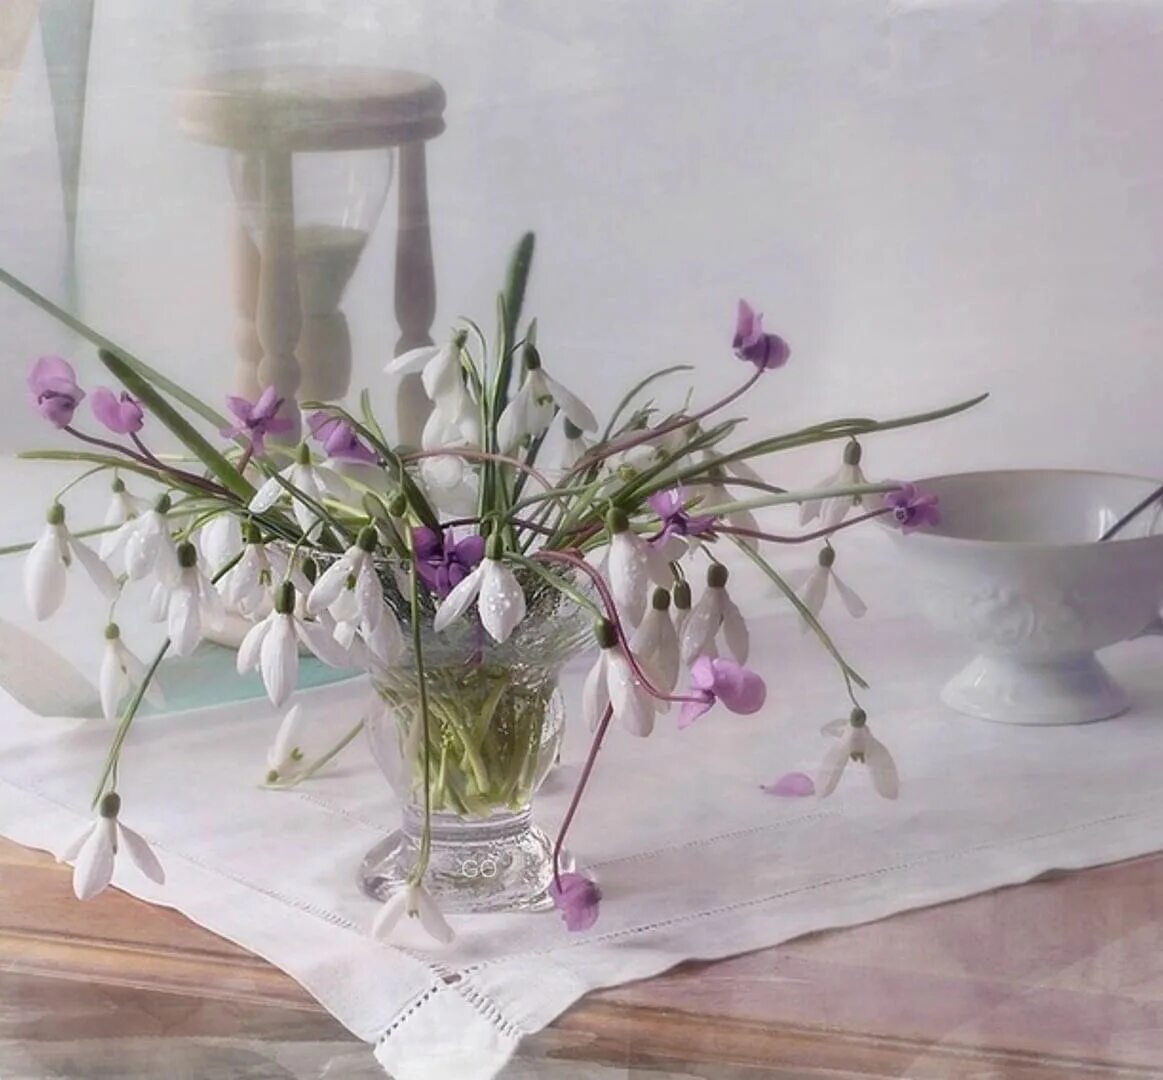 Доброе утро первоцветы. Джим Фаррант натюрморт. Джим Фаррант художник. Натюрморт с весенними цветами. Весенние цветы в вазе.